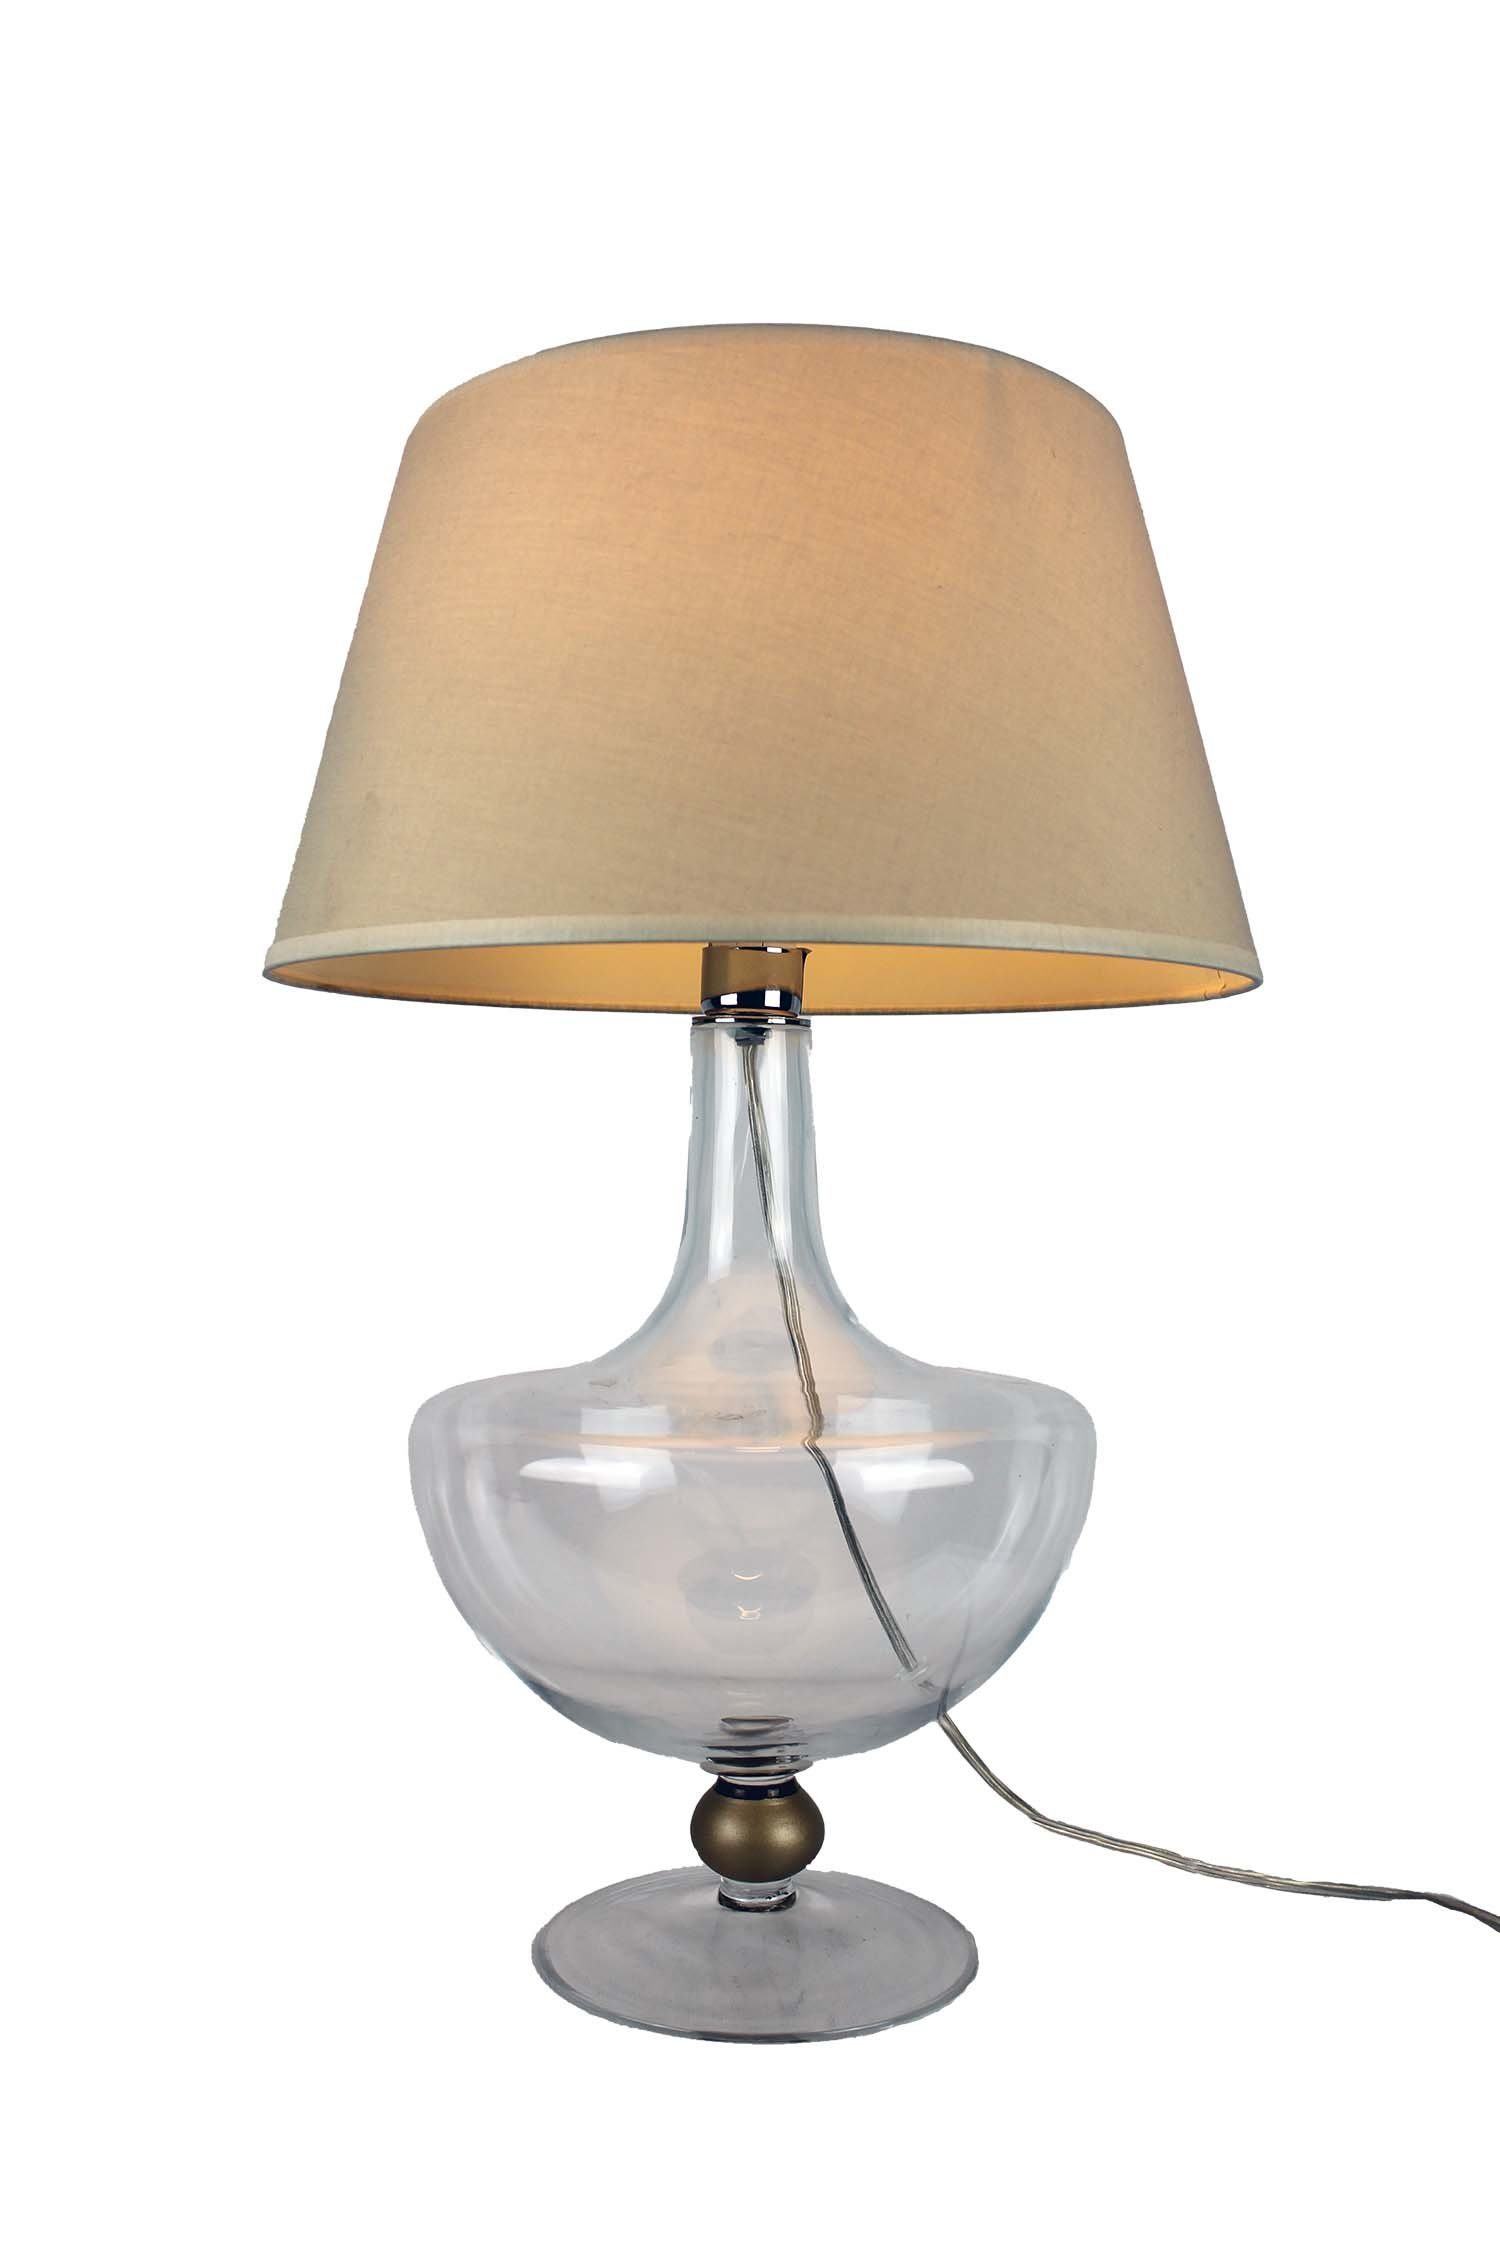 Signature Home Collection Nachttischlampe »Glaslampe klar bauchig klassisch  mit Lampenschirm«, Glaslampe im klassischen Stil online kaufen | OTTO